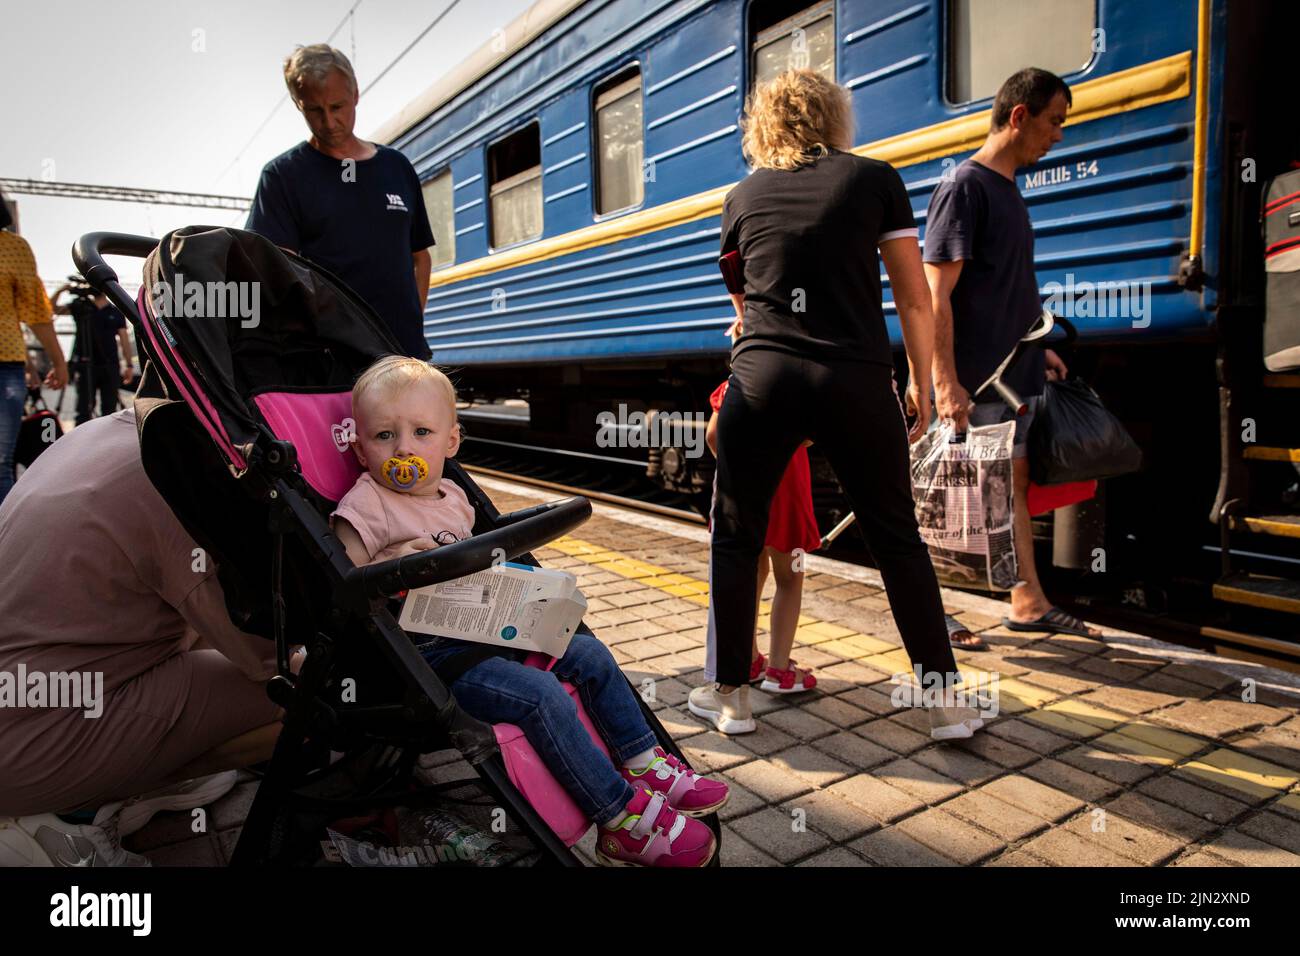 Pokrowsk, Oblast Donezk, Ukraine. 2. August 2022. Ein Baby, das im Kinderwagen sitzt, wartet auf den Evakuierungszug mit seinen Eltern am Bahnhof Pokrovsk. Inmitten der intensivierten Kämpfe im östlichen Teil der Ukraine intensiviert die Ostukraine nun ihre zivile Evakuierung, da Millionen ukrainischer Familien aus dem immer näher rückt Krieg evakuiert wurden, da viele von ihnen in den westlichen Teil des Landes verlagert werden.Laut den Vereinten Nationen werden die meisten von ihnen in den Westen des Landes umgesiedelt. Mindestens 12 Millionen Menschen sind seit dem russischen Einmarsch in die Ukraine aus ihren Häusern geflohen, während sieben Millionen Menschen sind Stockfoto